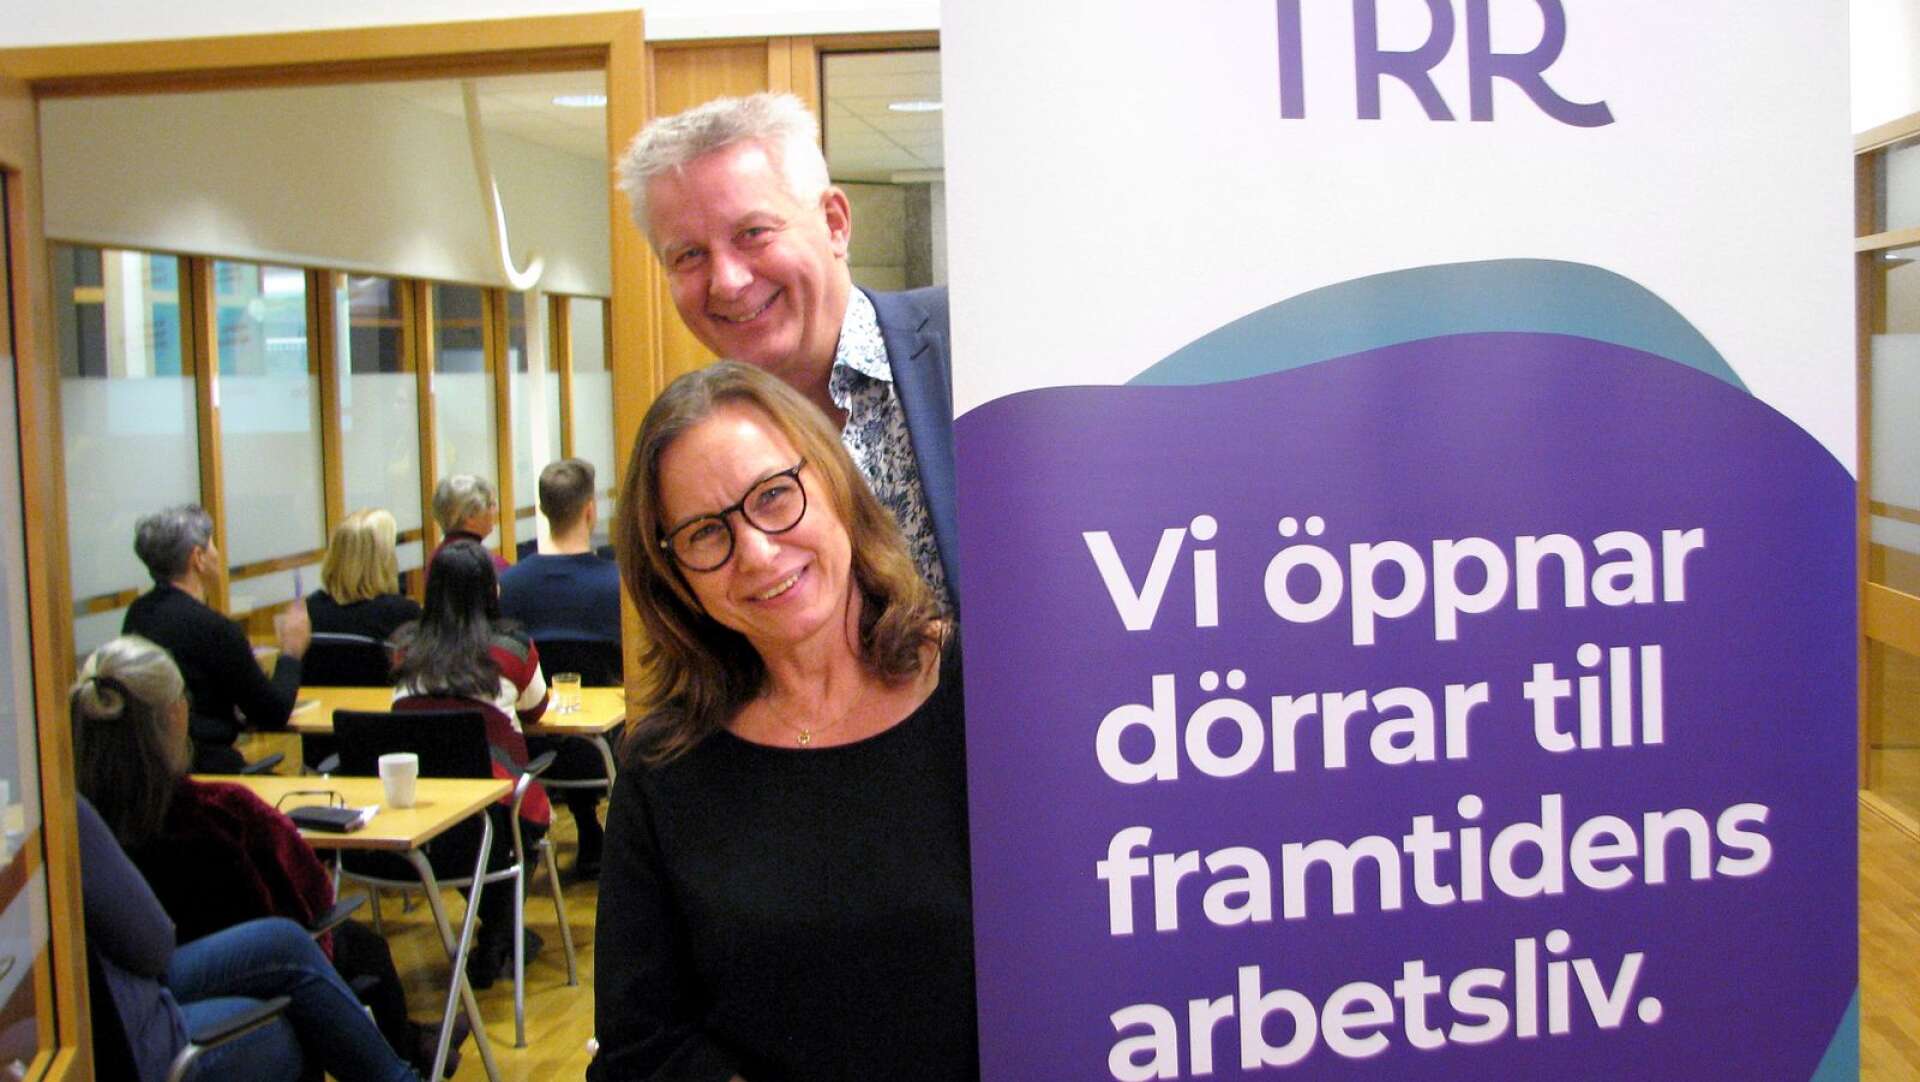 Vi öppnar dörrarna till framtidens arbetsliv, säger Anna Bångerius och Hafsteinn Jonsson, rådgivare i Trygghetsrådet Nordväst, Karlstad.